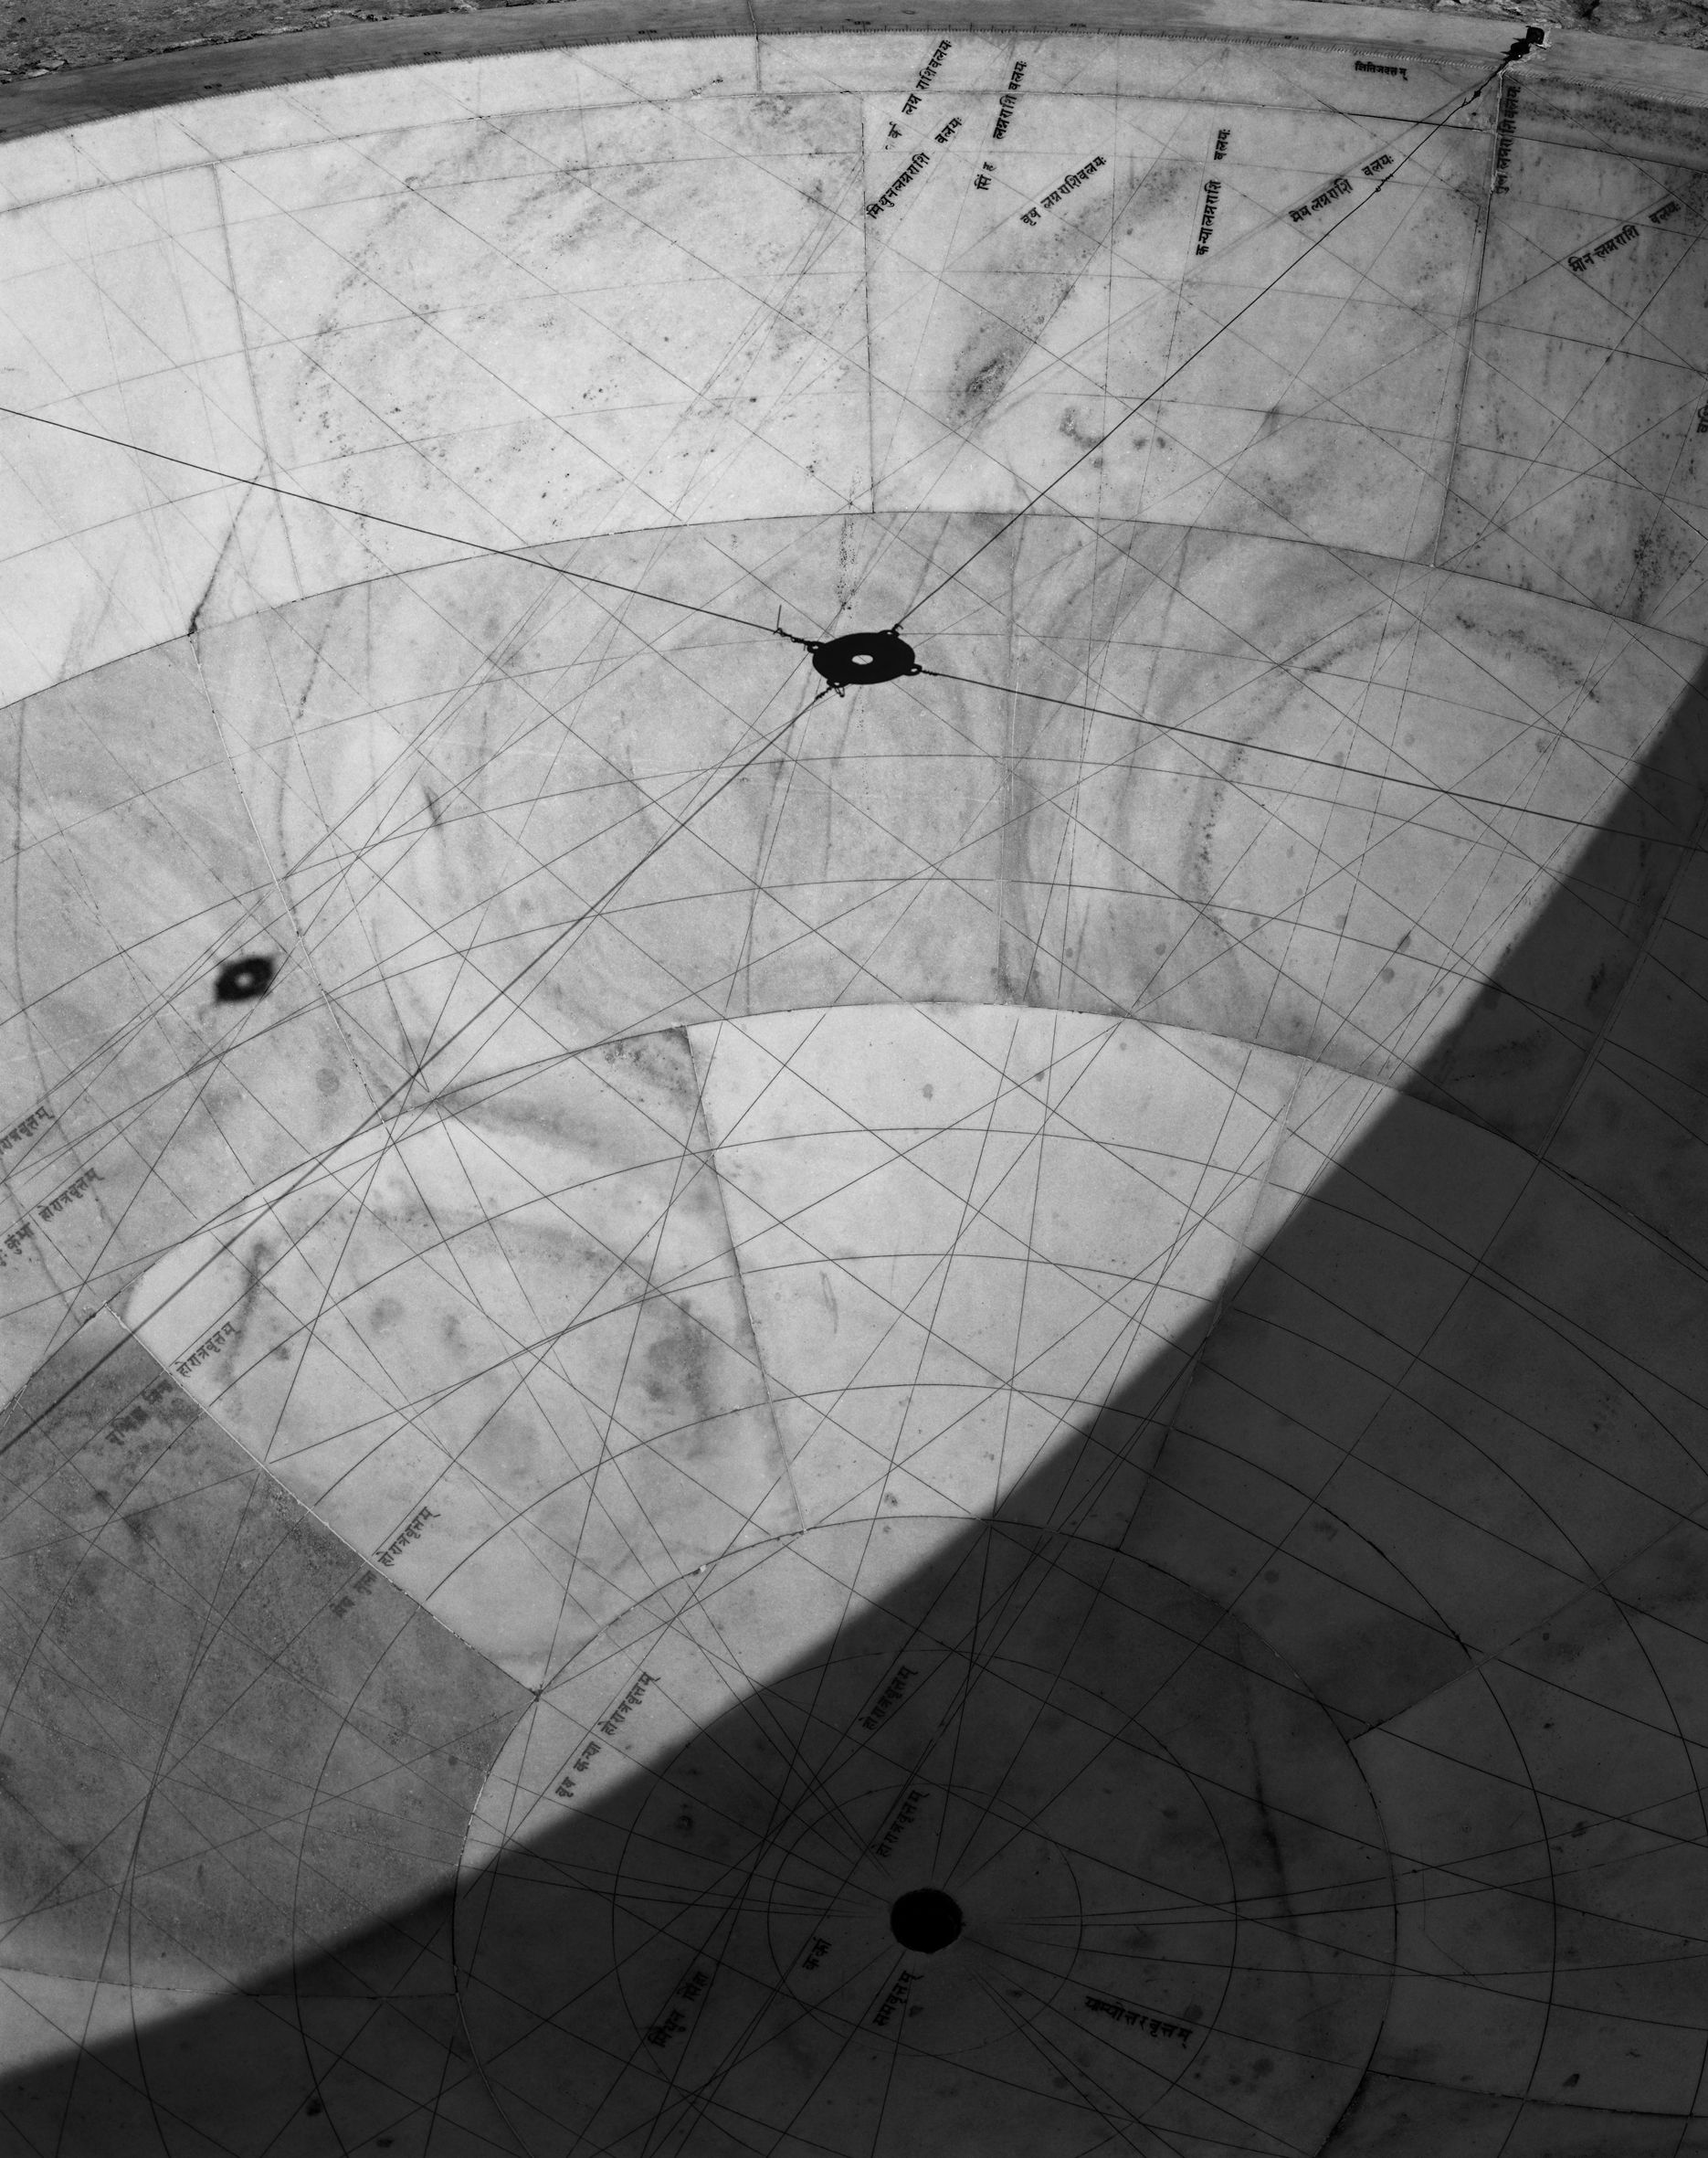 © Hélène Binet 'Jantar Mantar Observatory 2' courtesy ammann//gallery